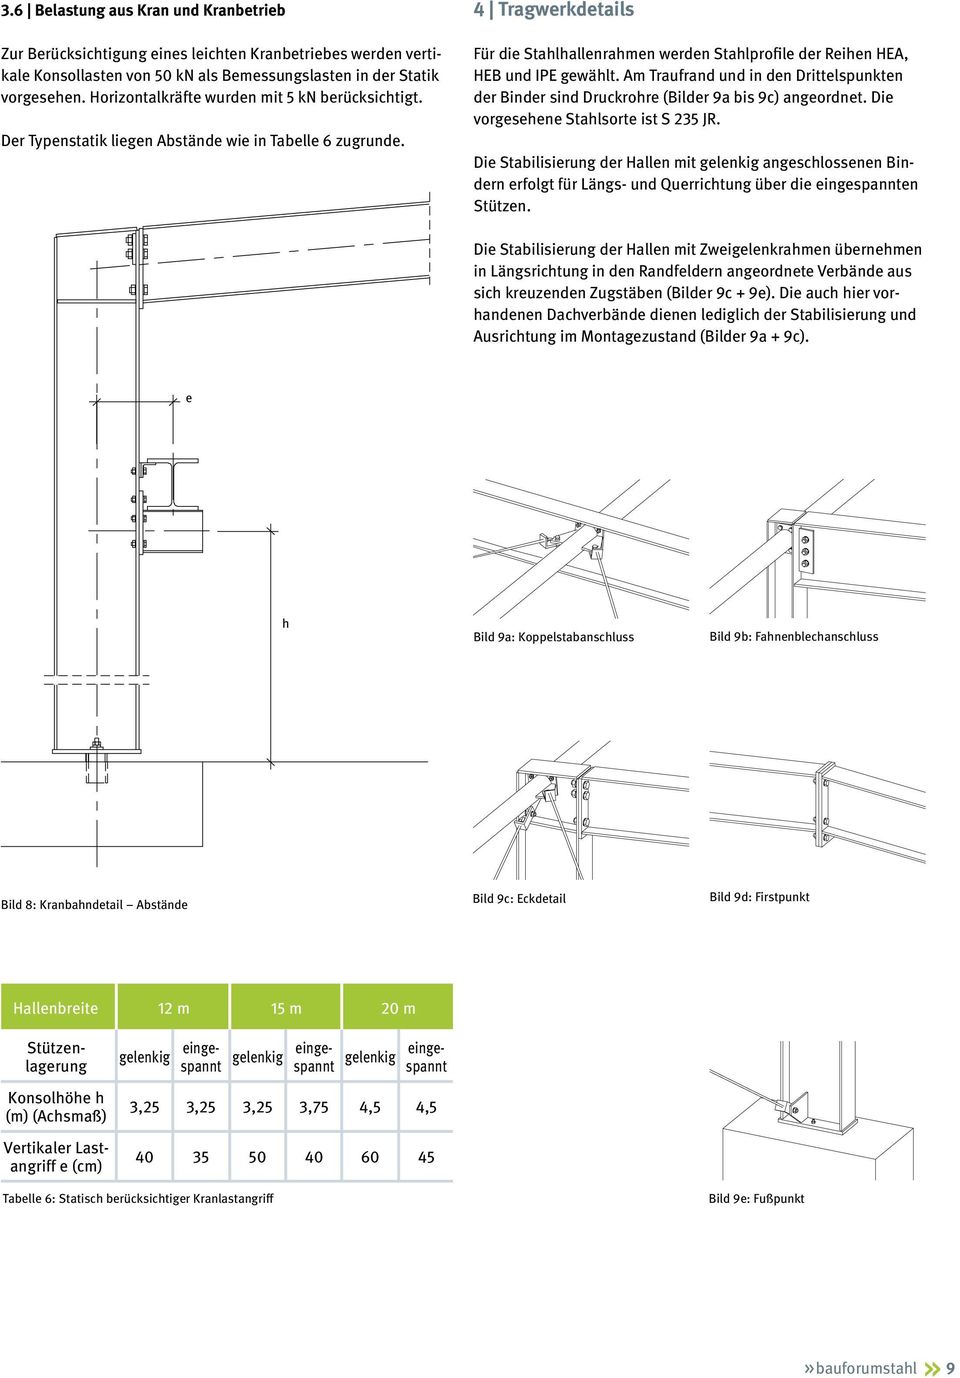 4 Tragwerkdetails Für die Stahlhallenrahmen werden Stahlprofile der Reihen HEA, HEB und IPE gewählt. Am Traufrand und in den Drittelspunkten der Binder sind Druckrohre (Bilder 9a bis 9c) angeordnet.